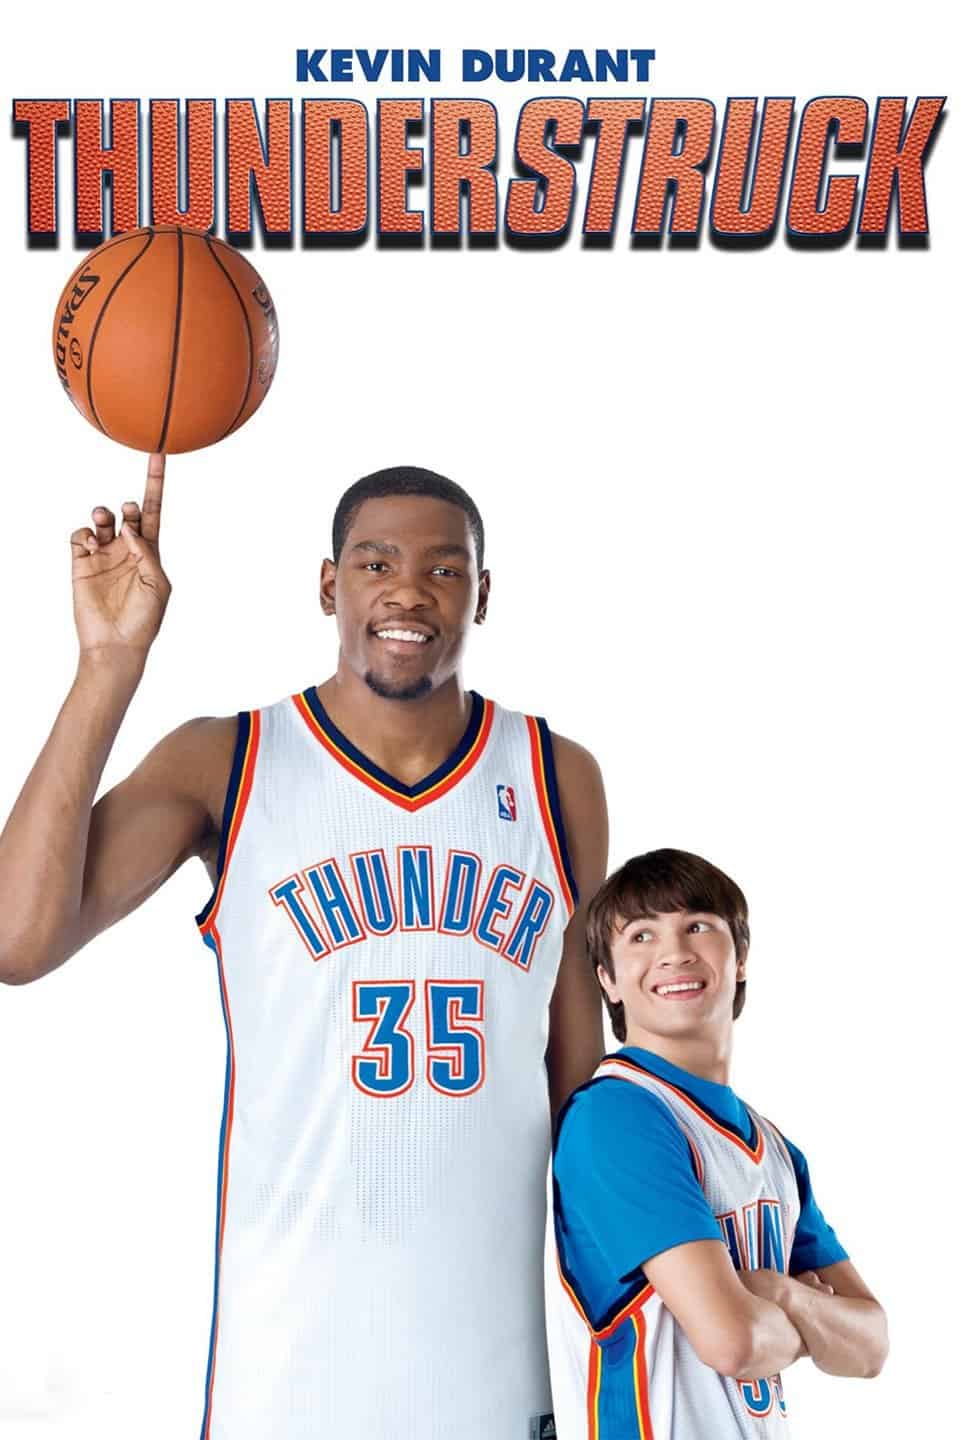 Thunderstruck (2012) Movie Poster